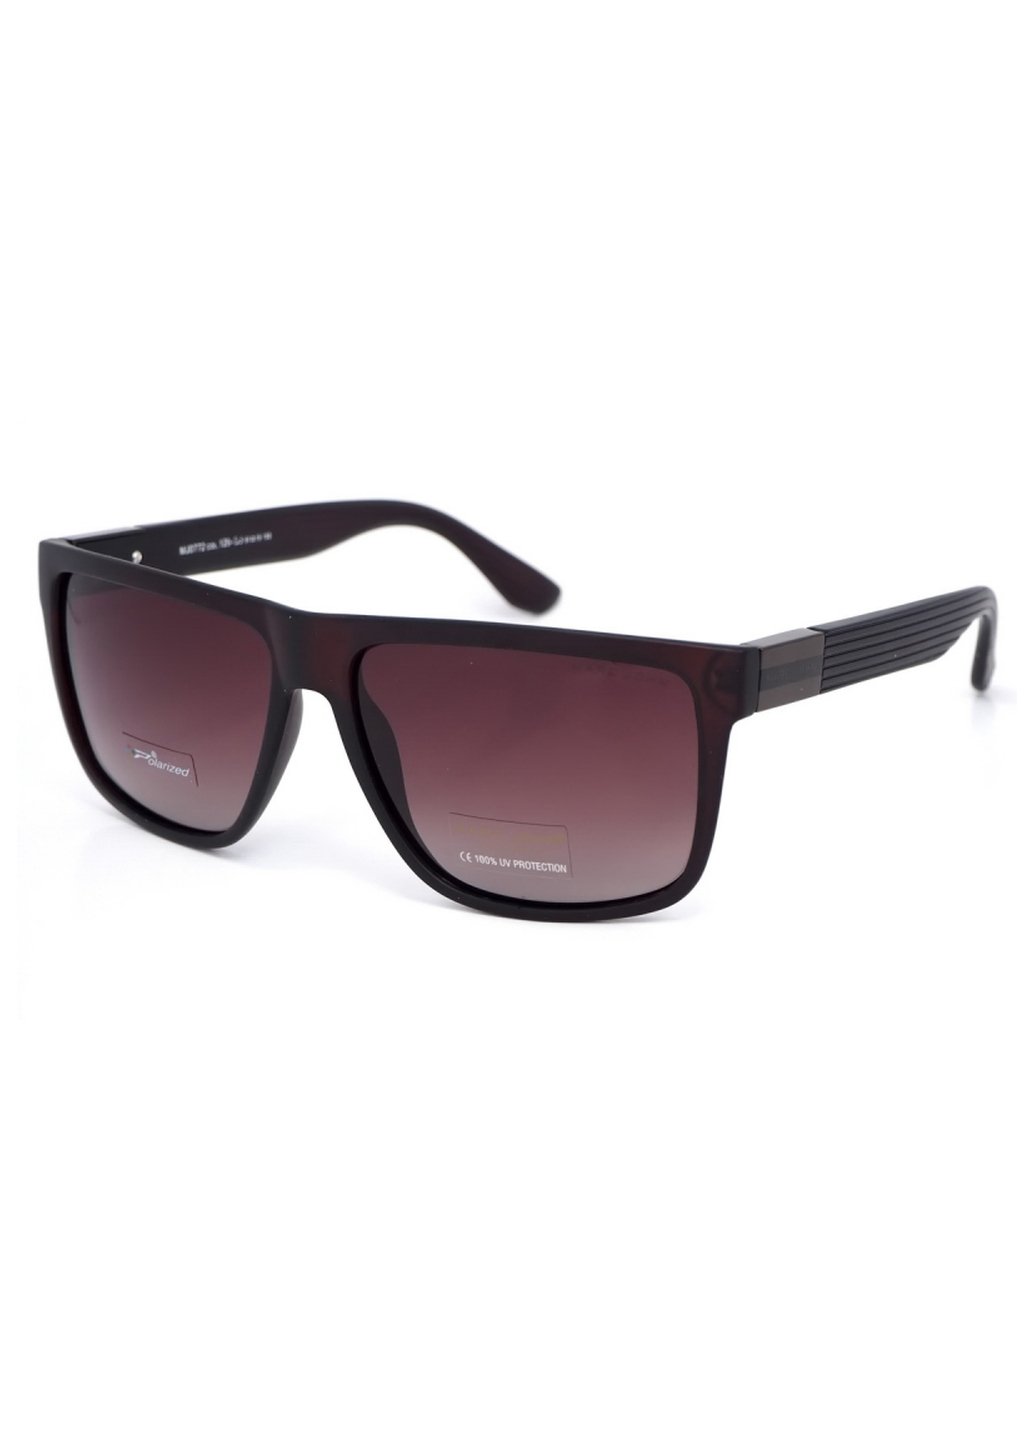 Купить Мужские солнцезащитные очки Marc John с поляризацией MJ0772 190029 - Бордовый в интернет-магазине